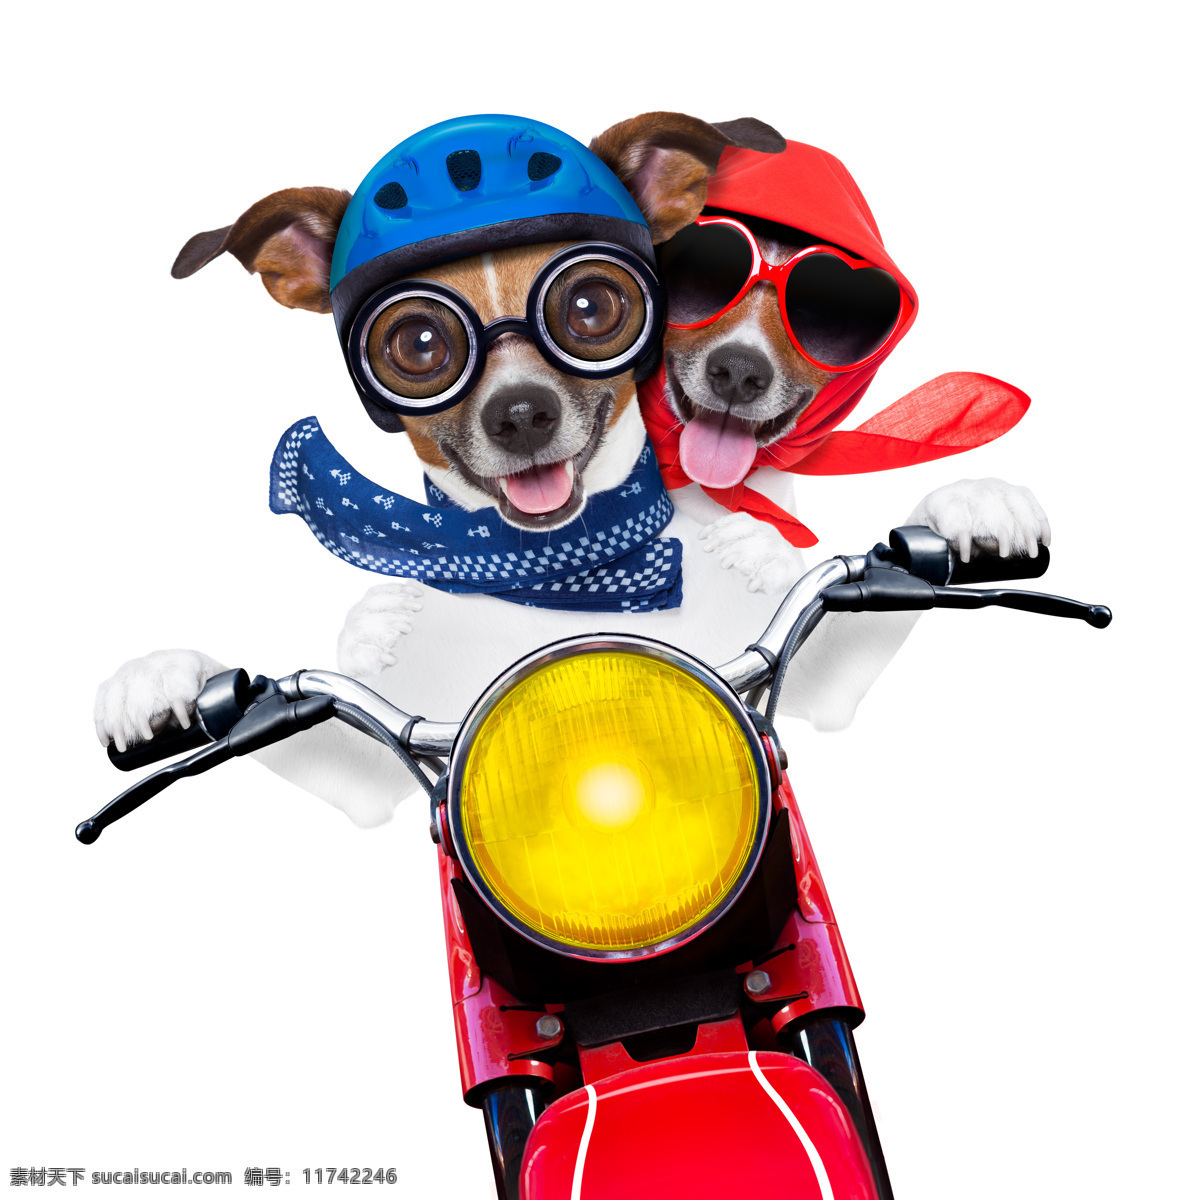 骑摩托的小狗 骑摩托 摩托车 创意摄影 广告摄影 广告大片 可爱宠物 小狗 狗狗 宠物狗 宠物摄影 家禽家畜 生物世界